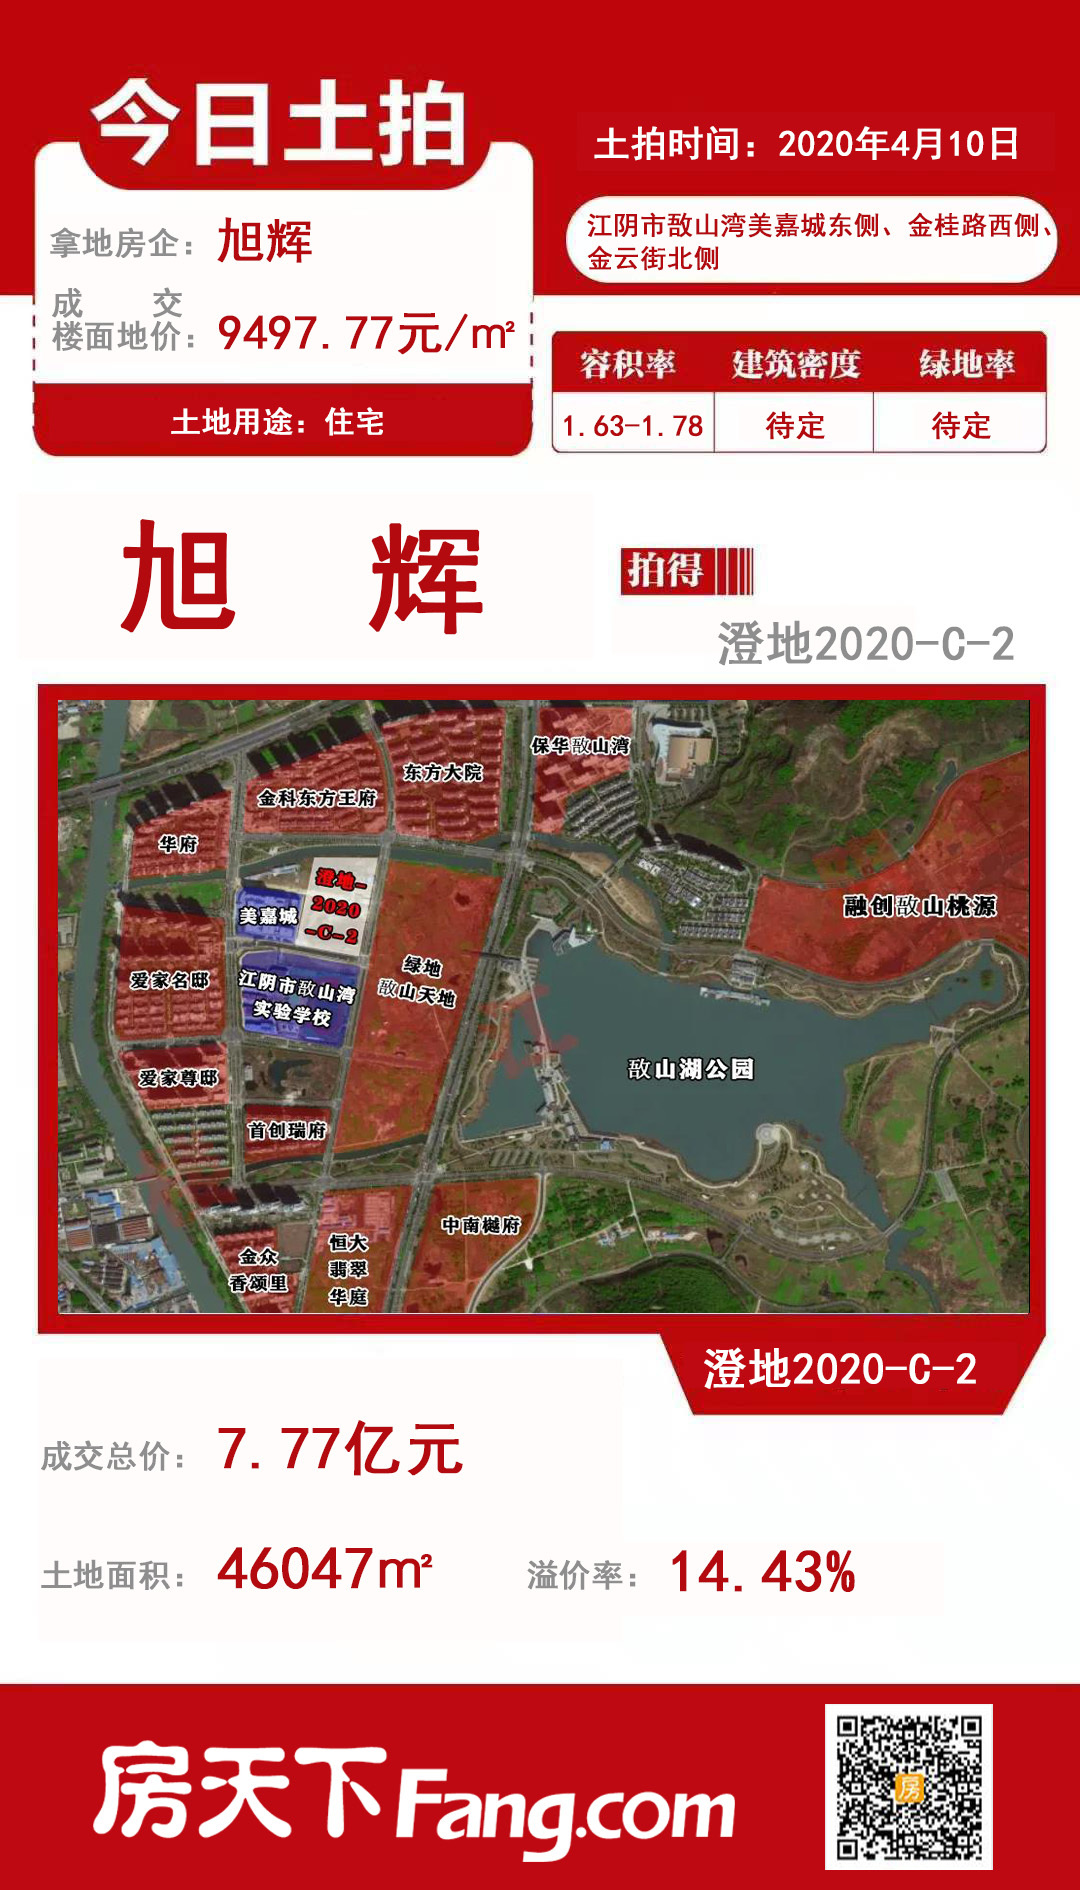 复工后首场土拍 楼面价13340.05元/㎡ 江阴新地王诞生